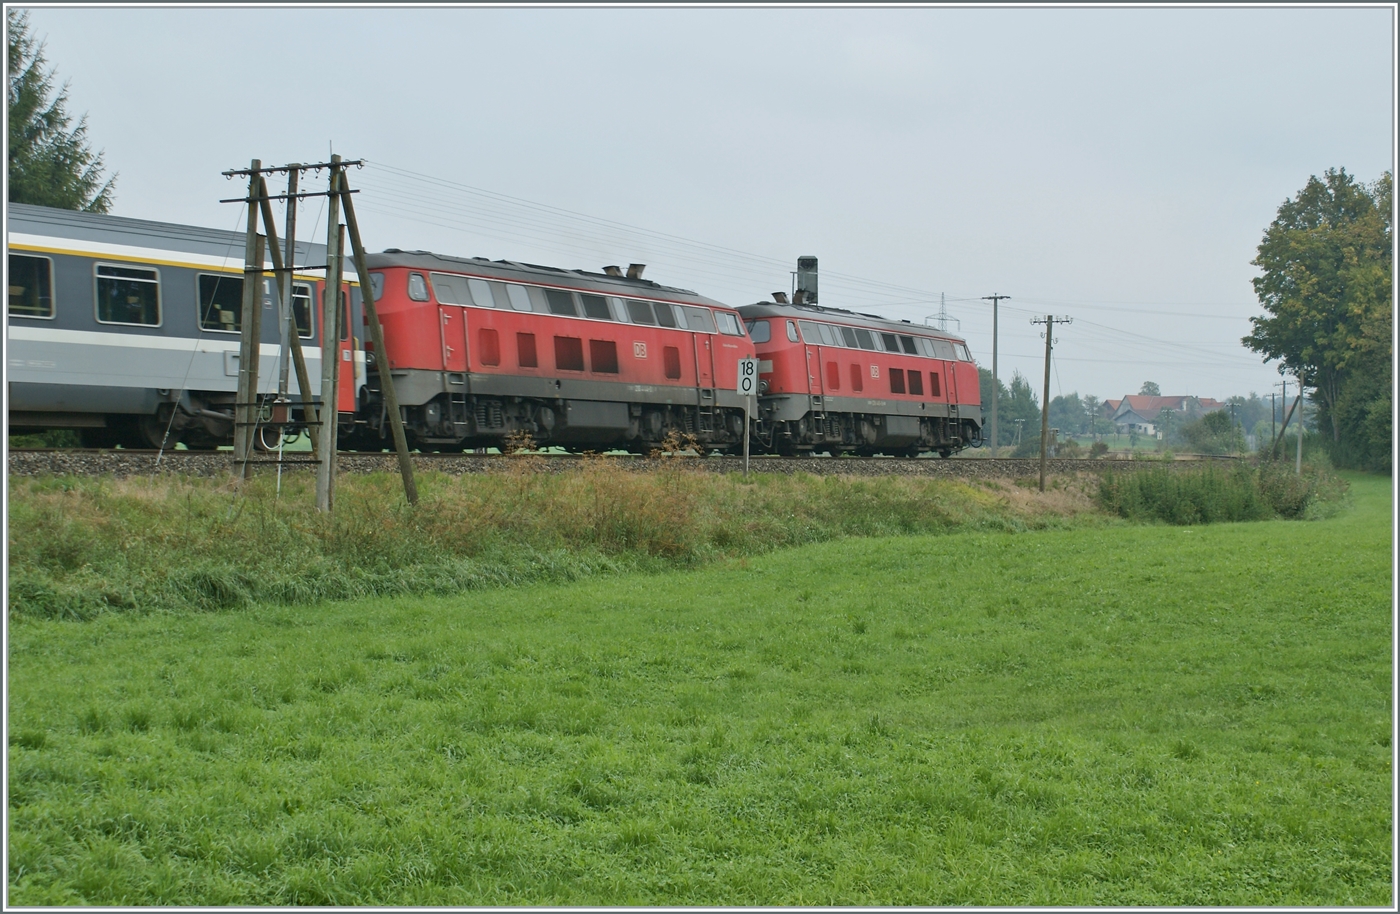 Die beiden DB 218 445-5 und 444-8 sind mit einem EC in Hergatz auf die direkte, aber nur einspurige Strecke via Memmingen abgezweigt. Das besondere dieser Strecke warten die herrlichen Telegrafenmasten entlang der Strecke.
Heute ist die Strecke weiterhin einspurig, aber elektrifiziert und übernimmt nun den gesammten EC Verkehr von Lindau nach München. 

11. Sept. 2009